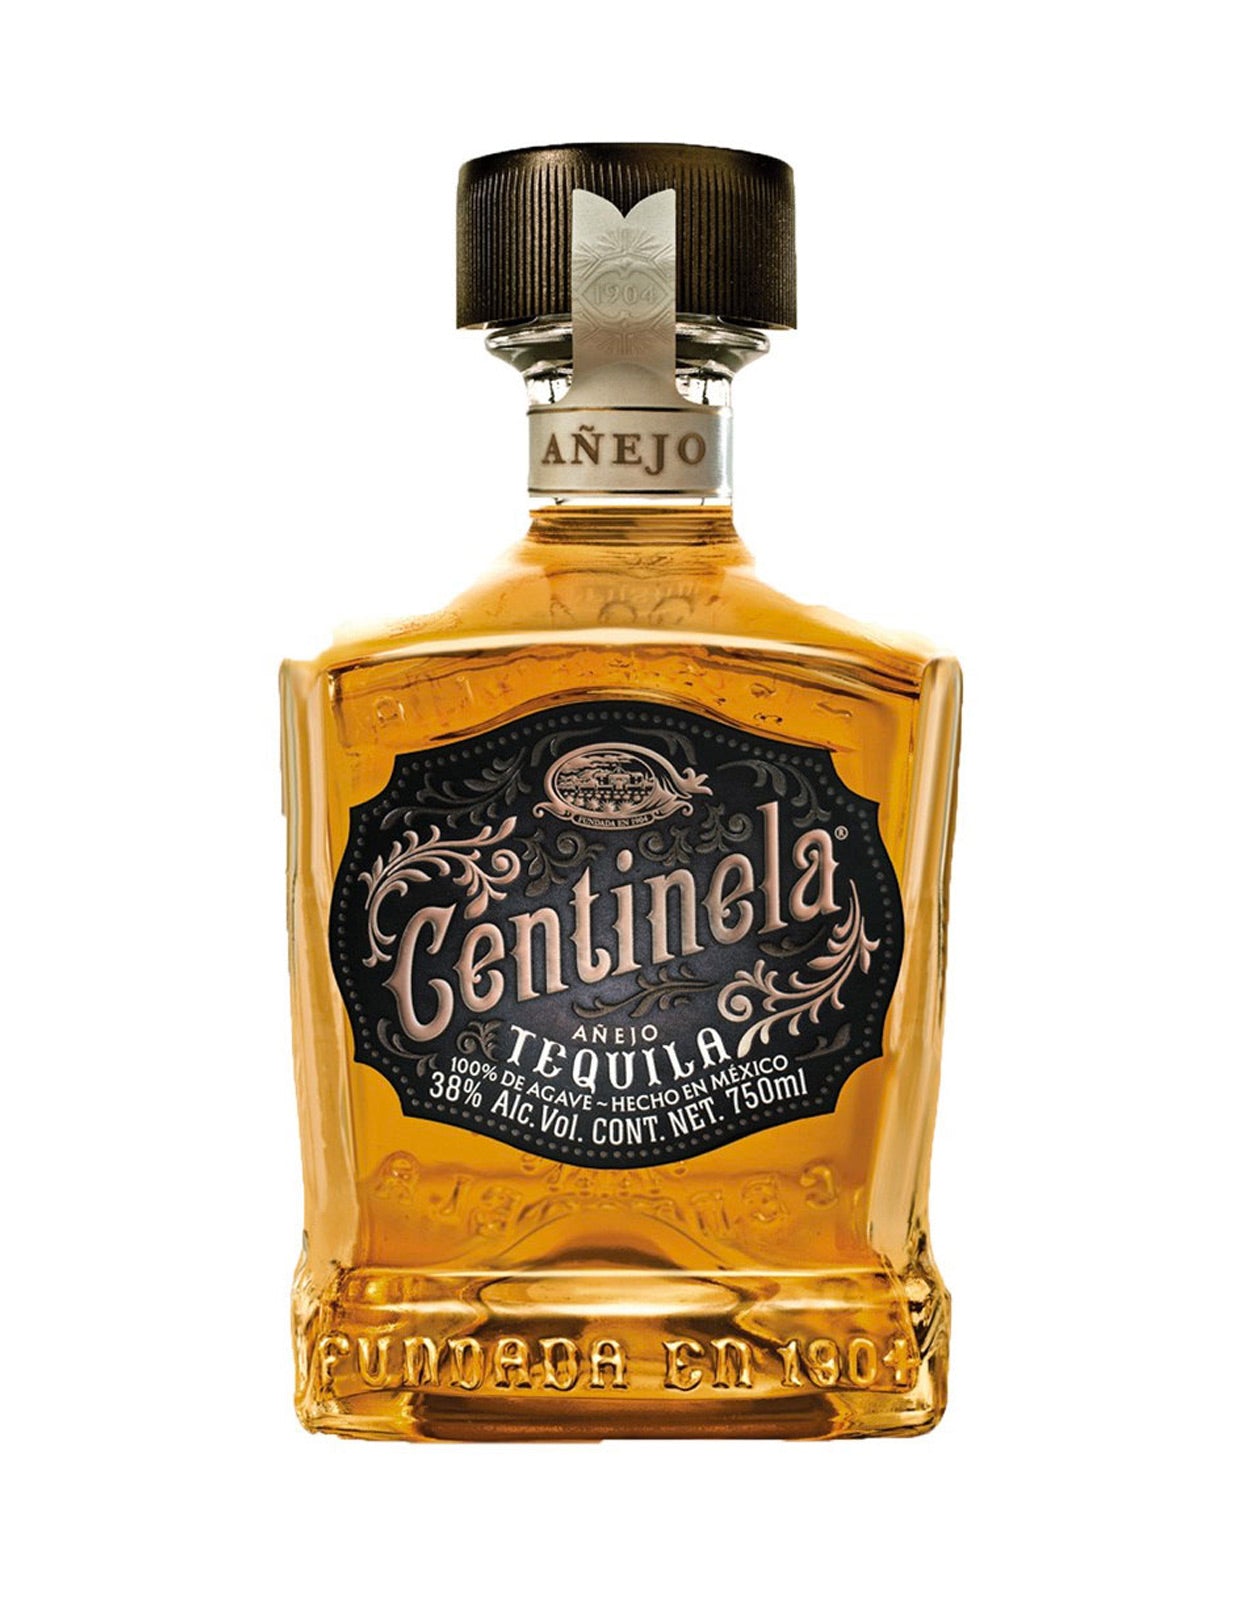 Centinela Anejo Tequila